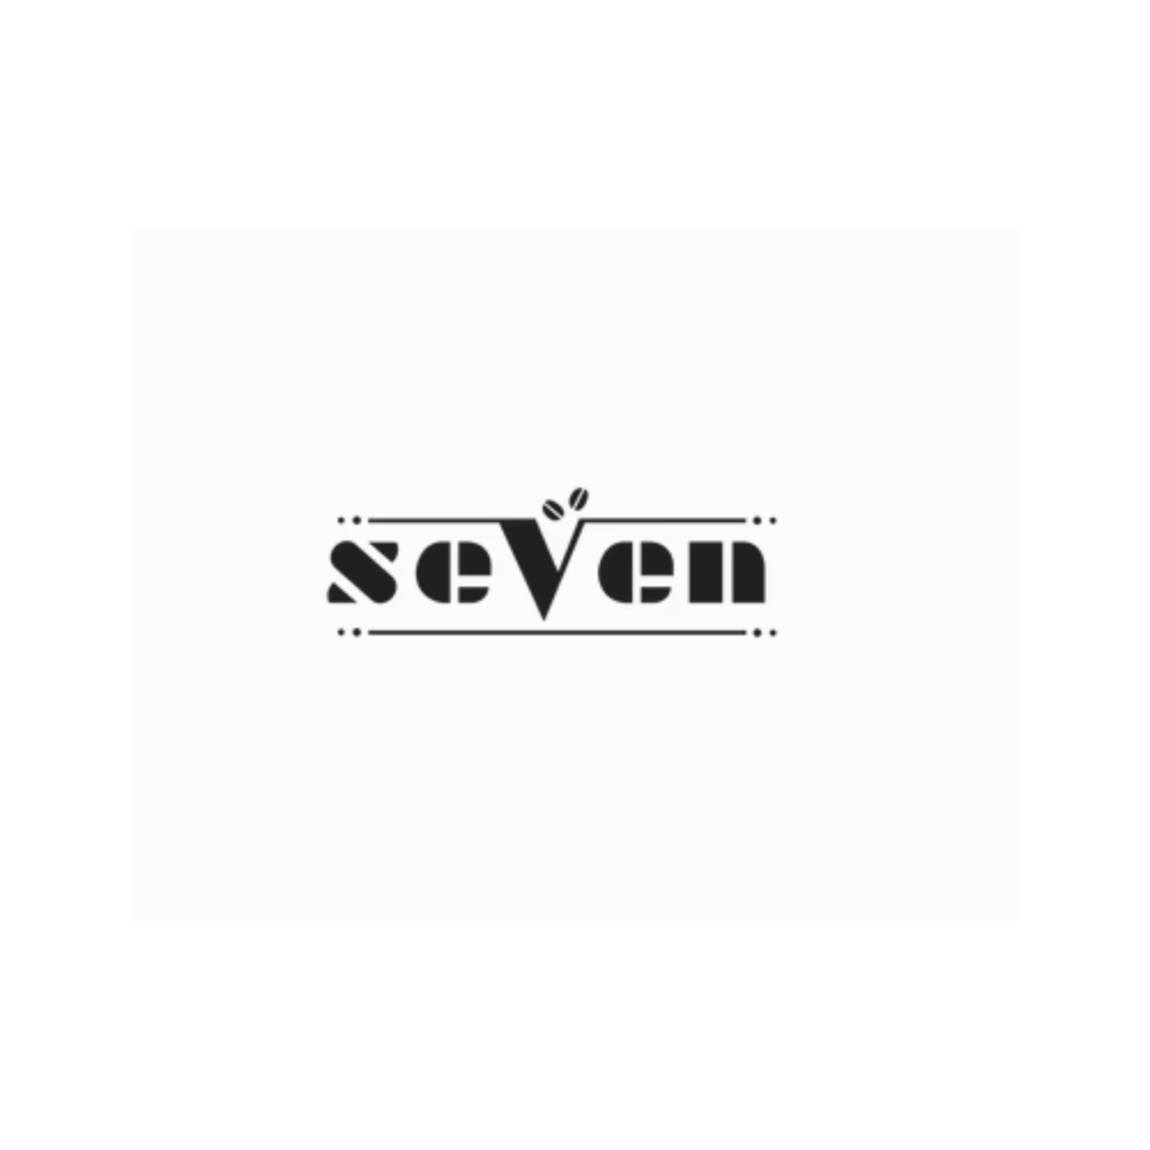 Seven Cafe